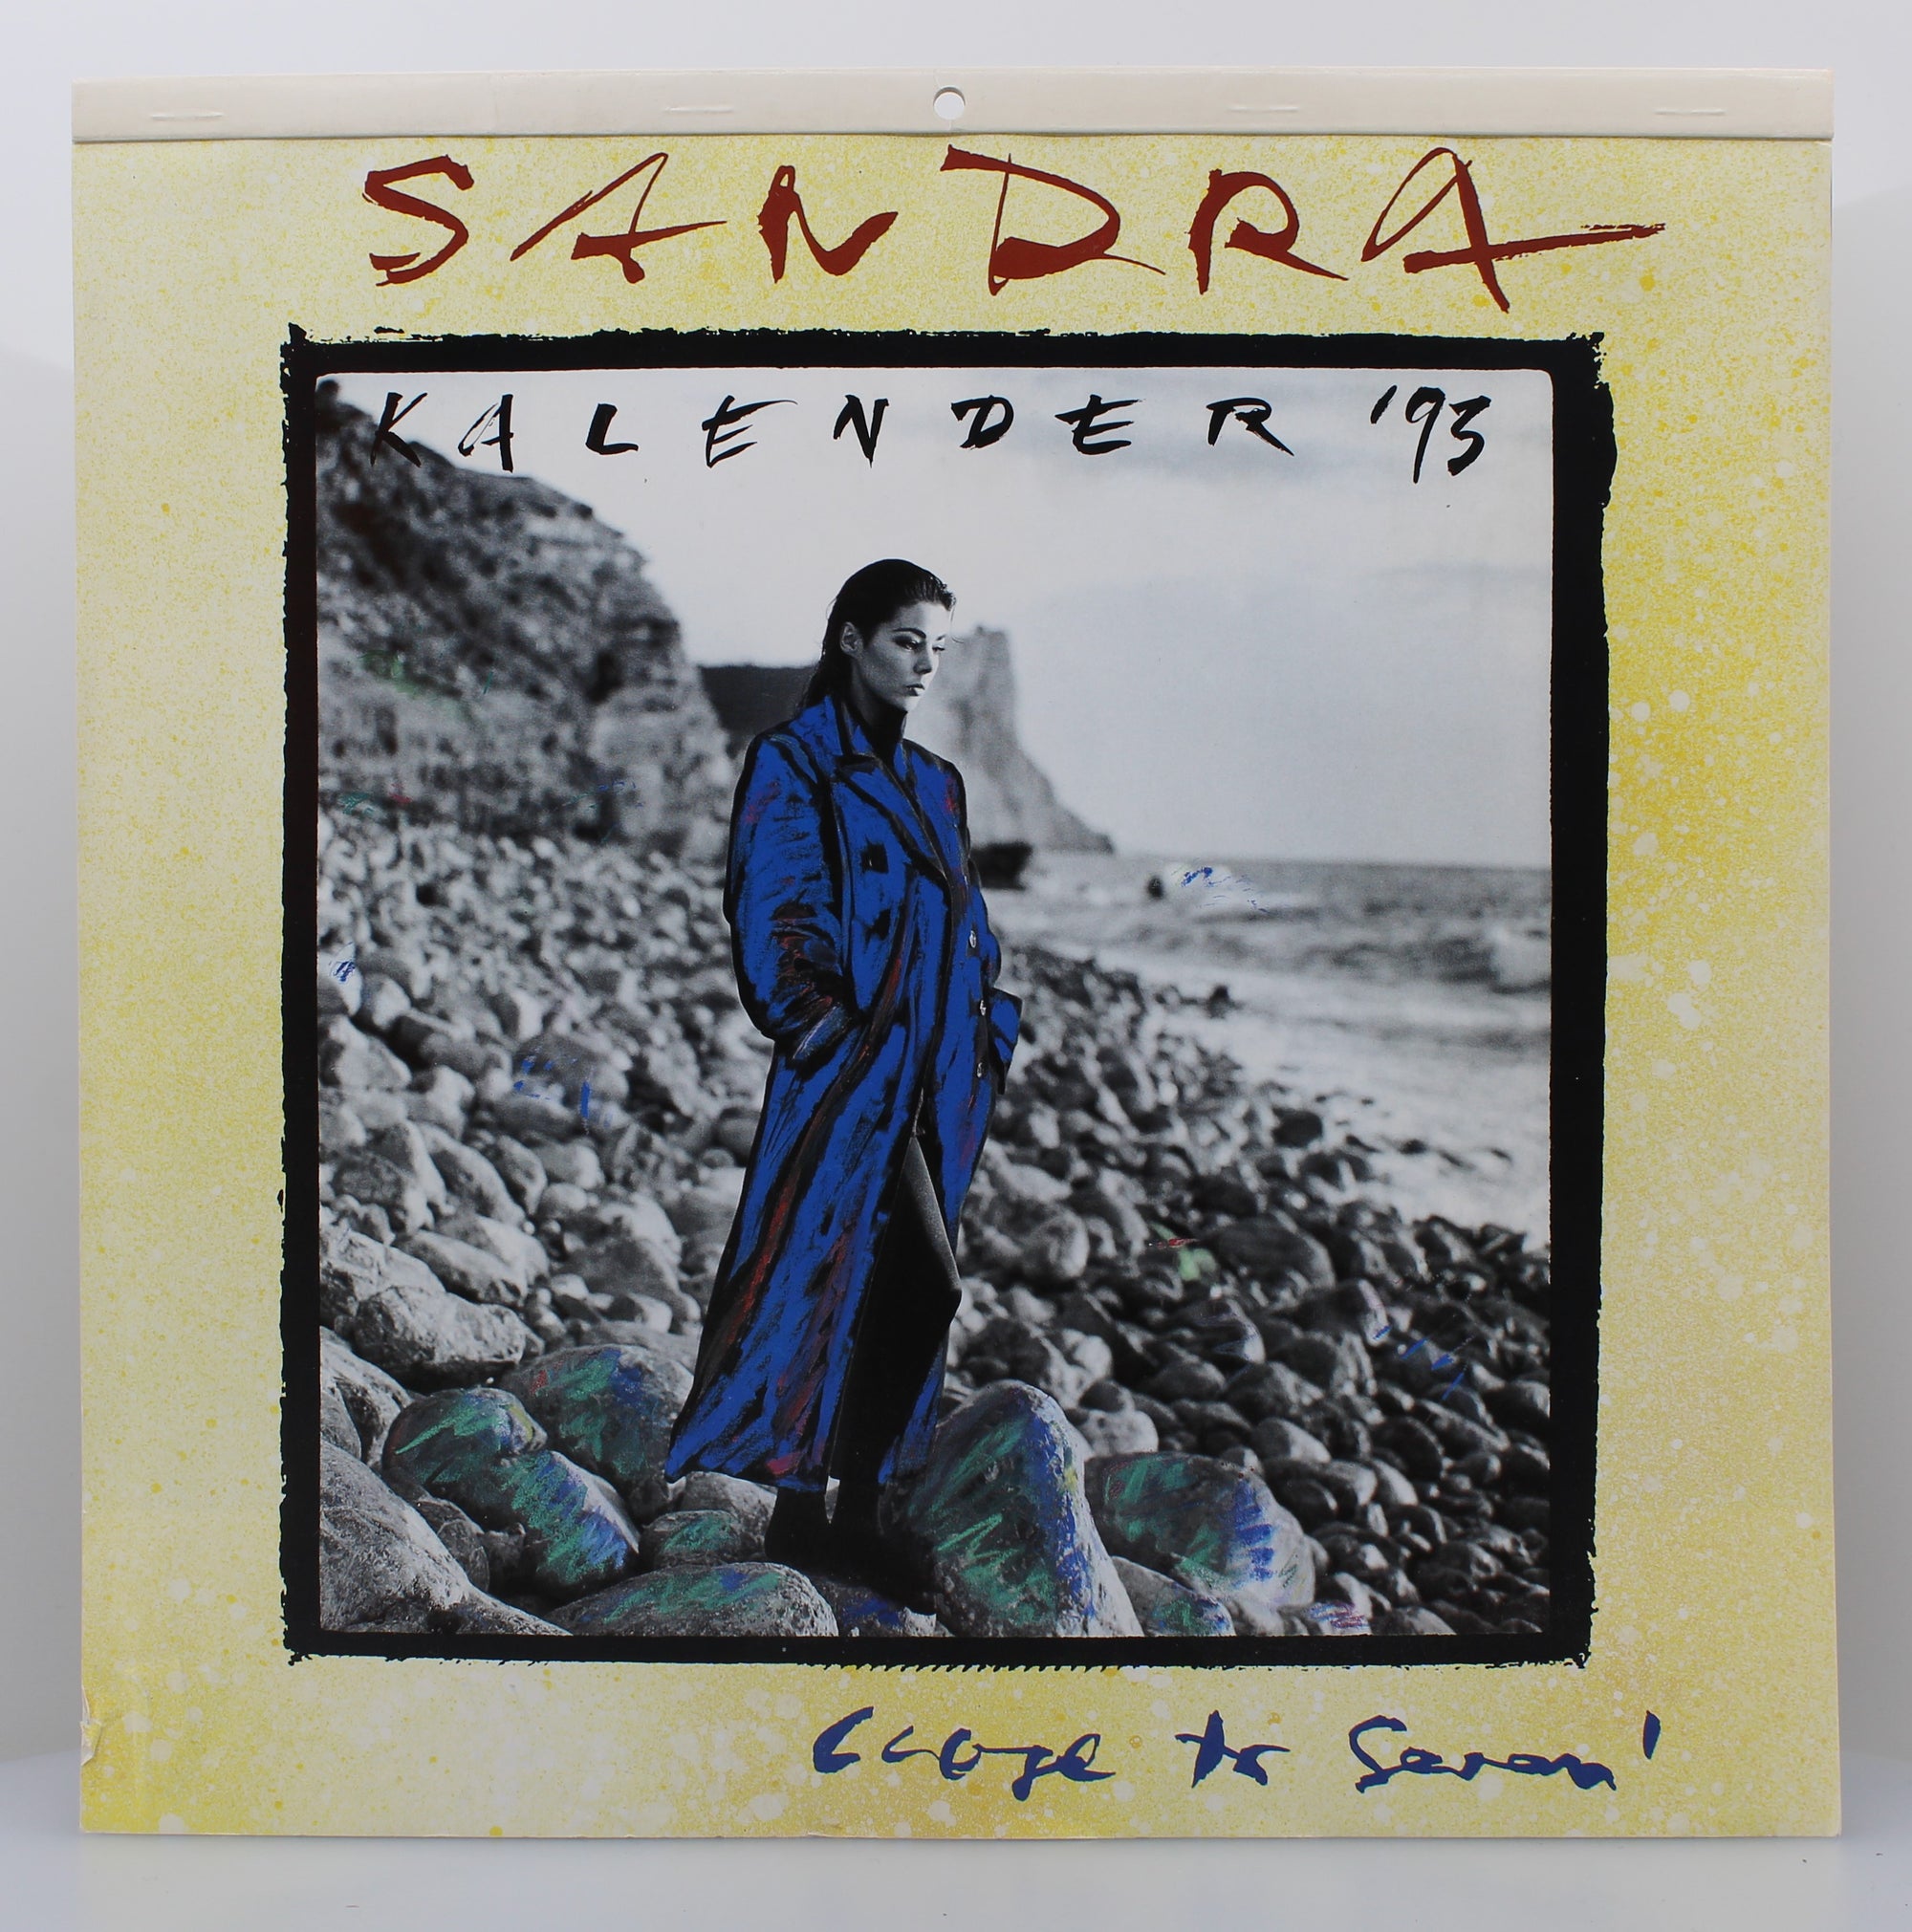 "Sandra - Kalender '93", PUBLISHED: 1993, Calendar, Germany 1993